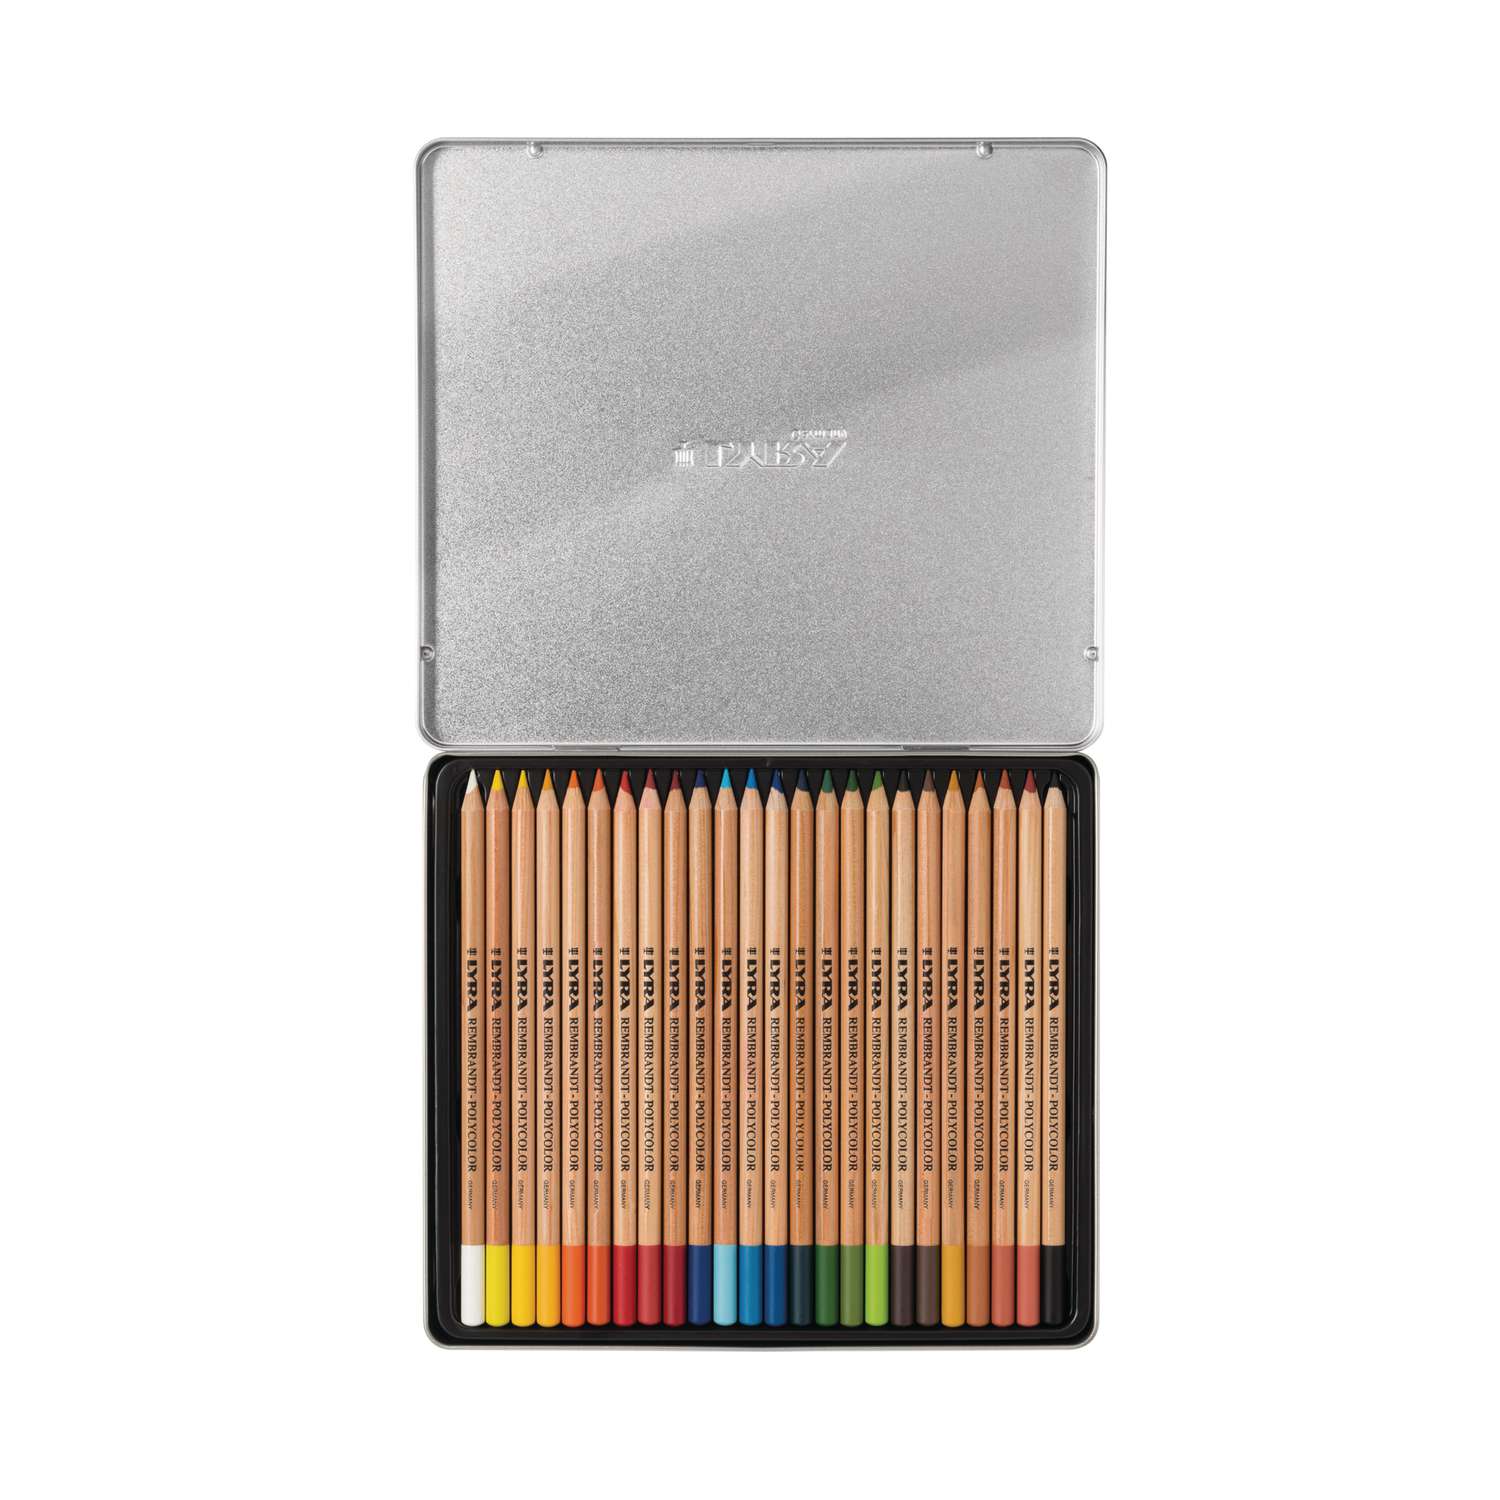 Boîte de 72 crayons de couleur LYRA Rembrant Polycolor